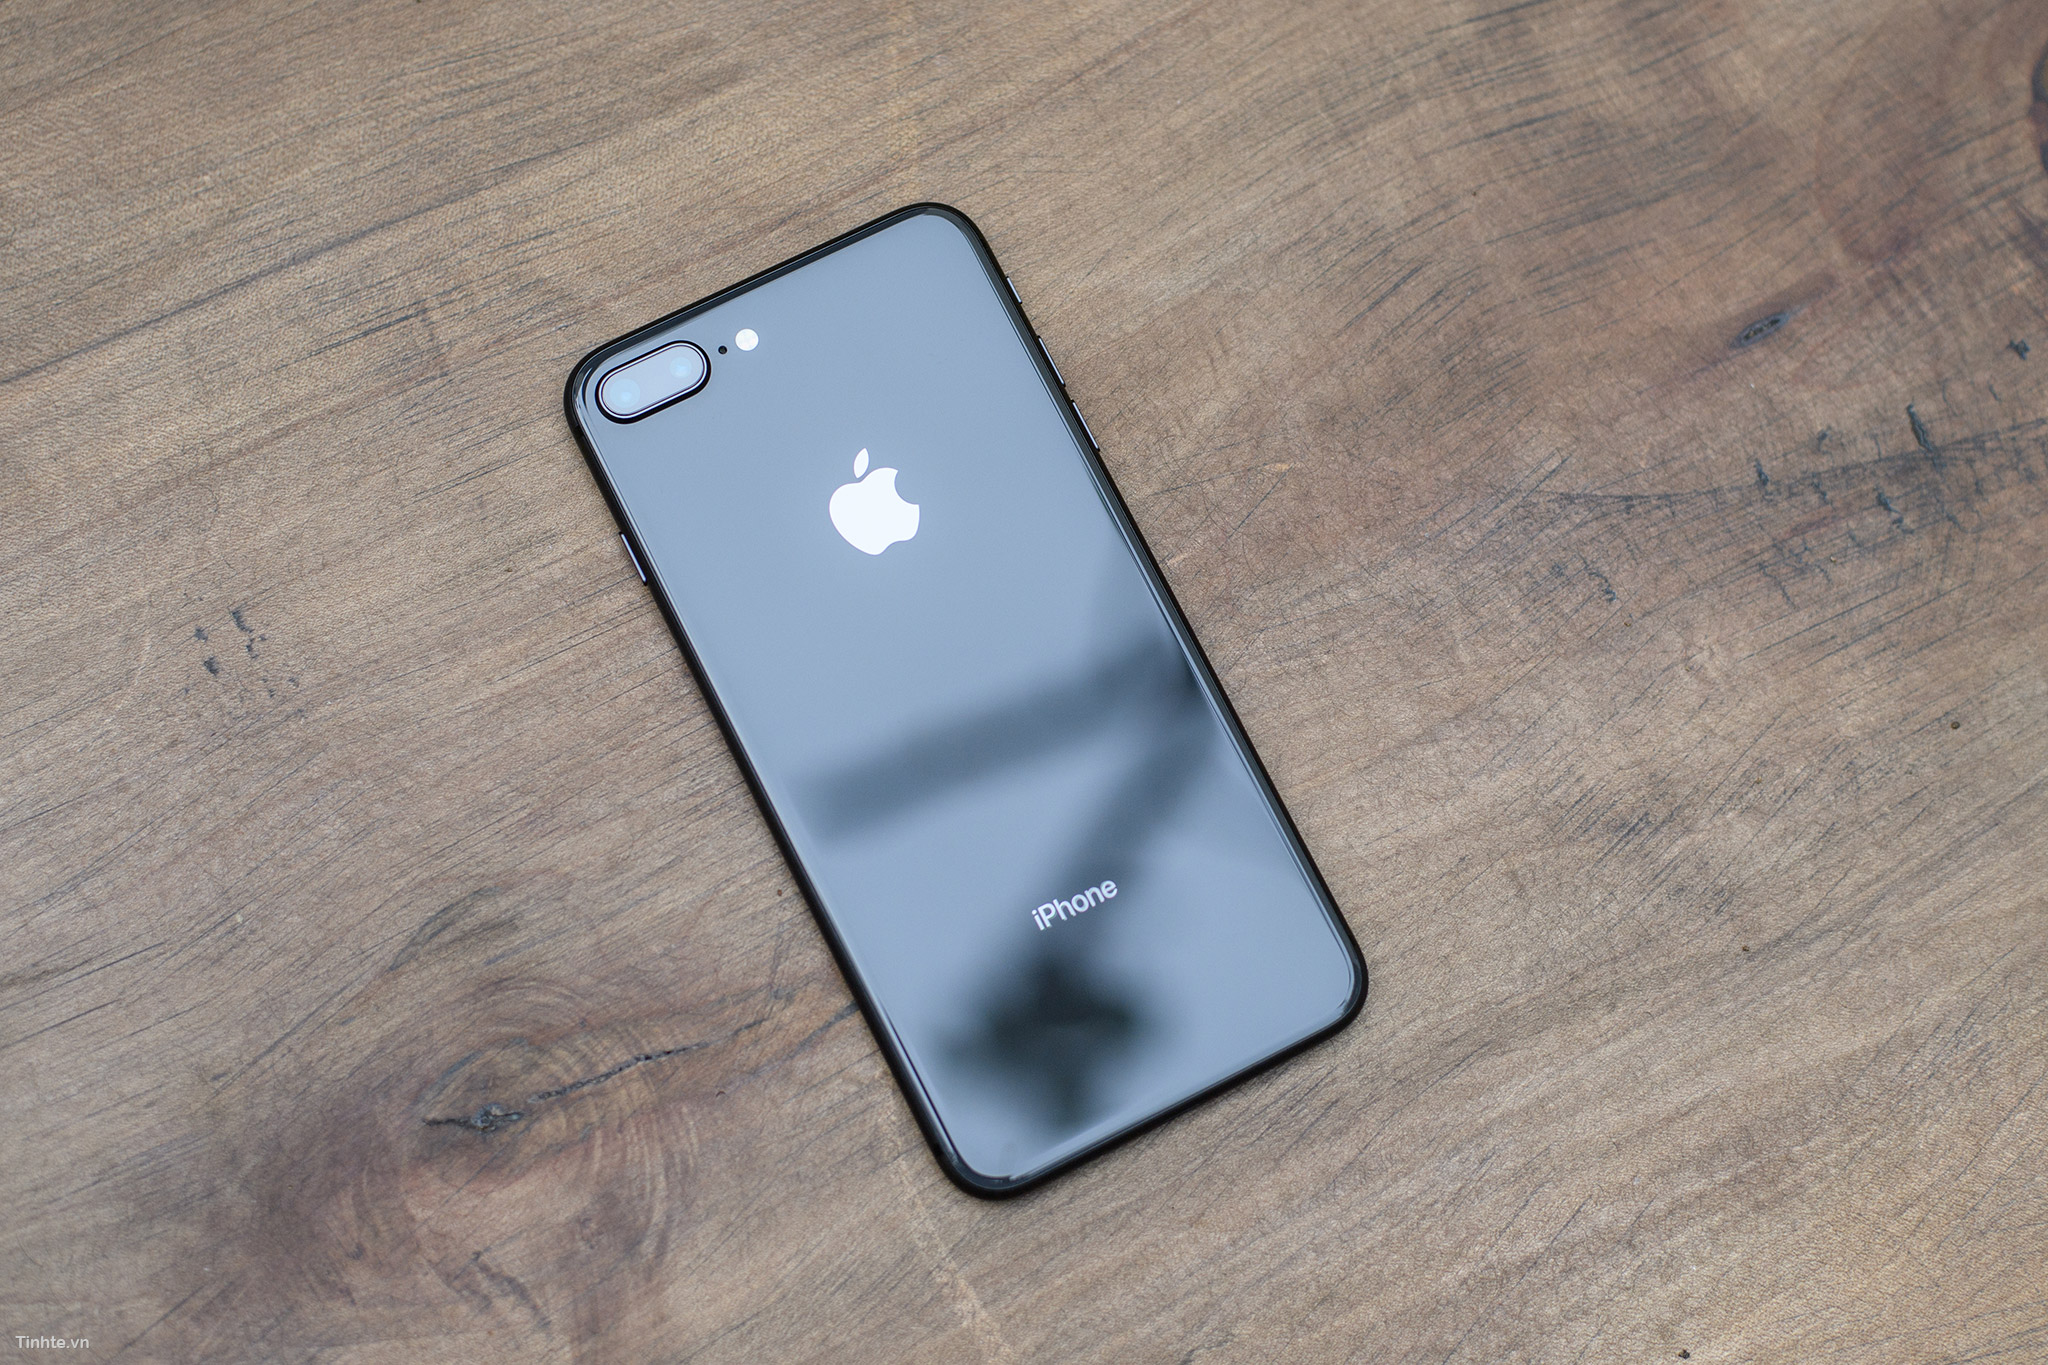 Đến với hình ảnh iPhone 8/8 Plus Space Gray, bạn sẽ bị thu hút bởi thiết kế tinh tế và đẳng cấp của sản phẩm này. Với các tính năng độc đáo, hiệu năng mạnh mẽ và camera tuyệt hảo, đây là sự lựa chọn tuyệt vời cho những ai yêu thích quyền lực và sự khác biệt.